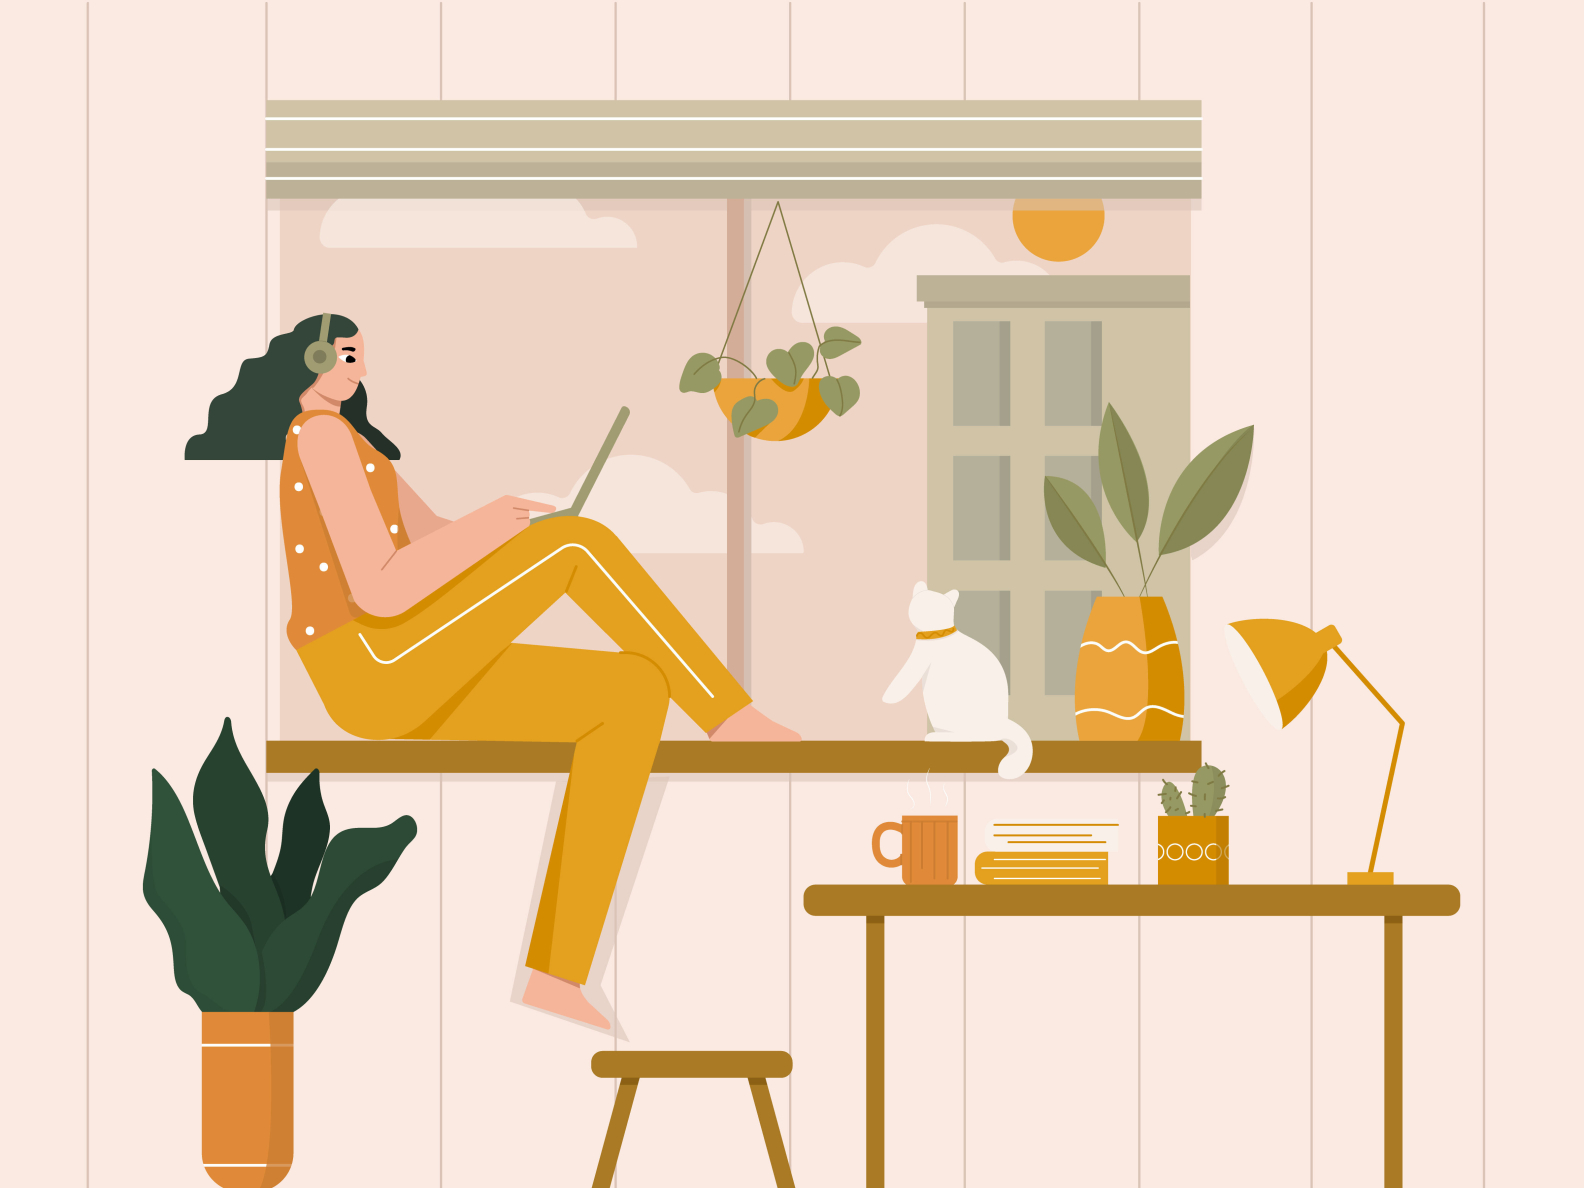 Woman relaxing illustration by Farhan Fauzan on Dribbble